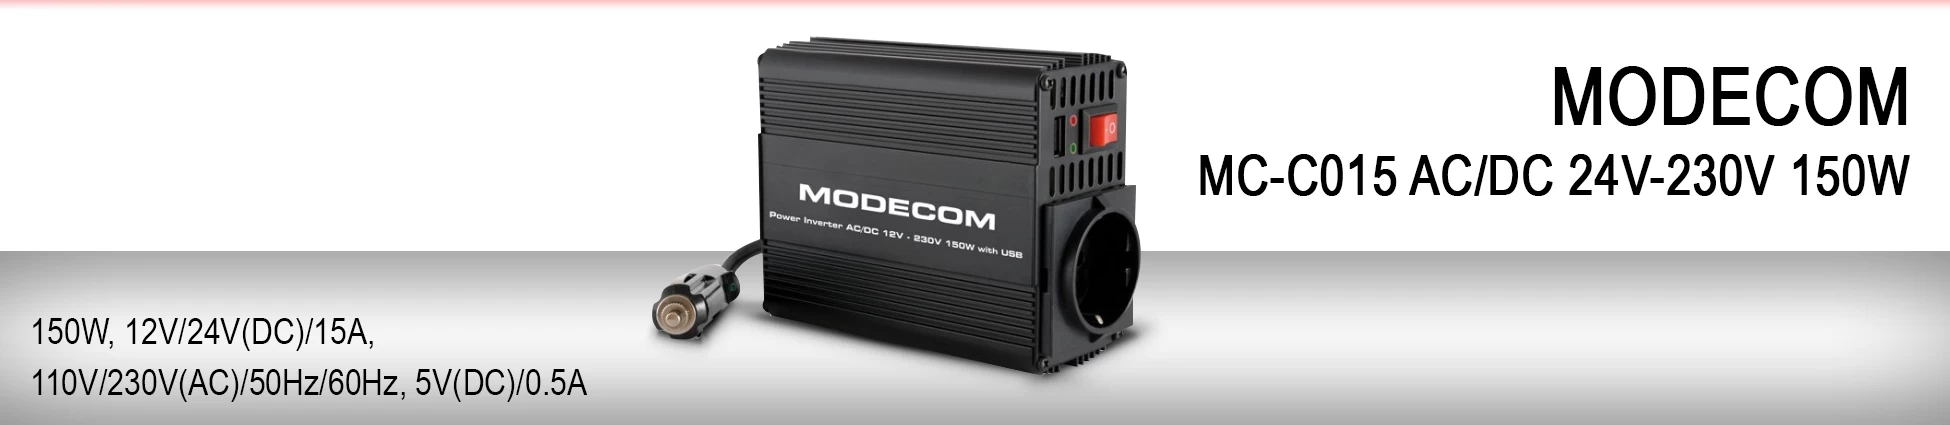  ModeCom MC-C015 AC/DC 24V-230V 150W